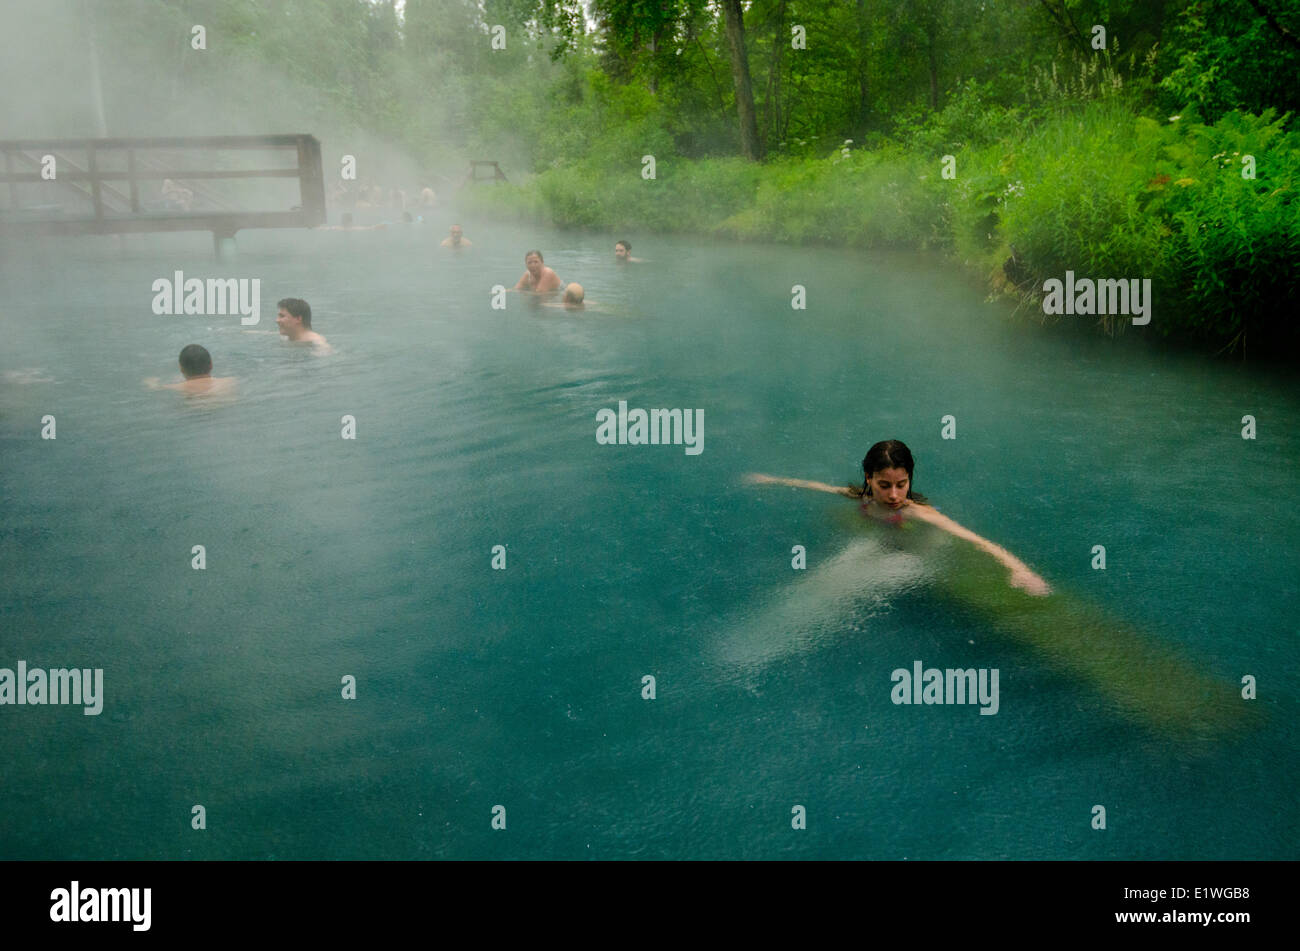 Les baigneurs faire tremper dans les sources thermales de la rivière Liard, dans le Nord de la Colombie-Britannique, Canada Banque D'Images